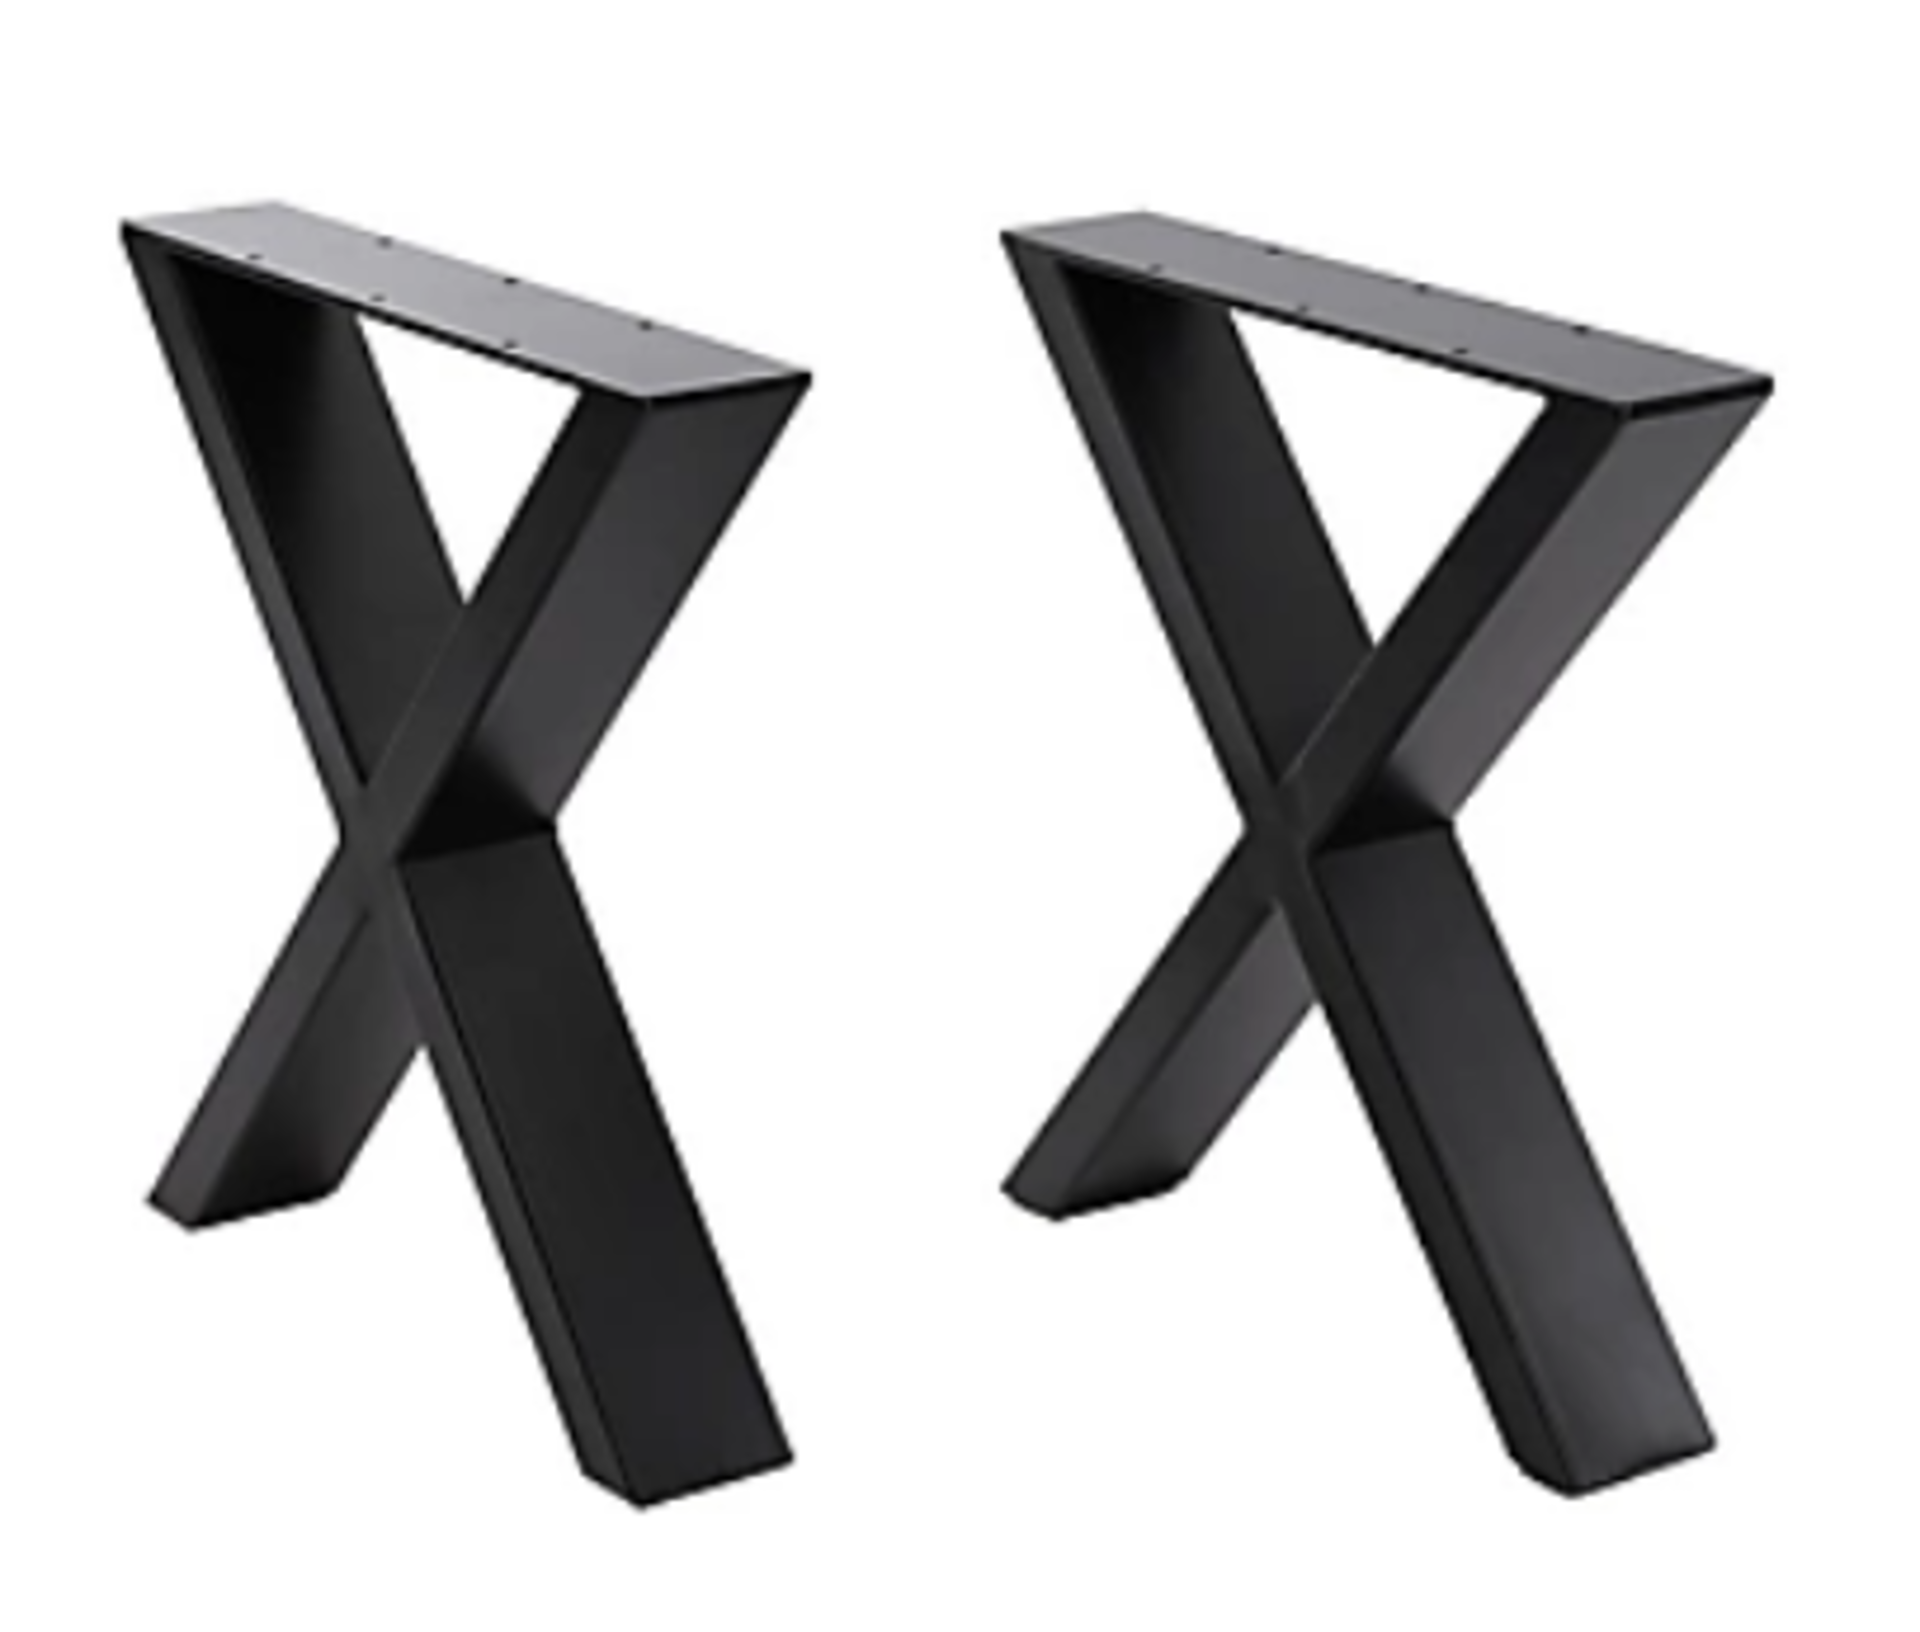 Set of 2 Black Industrial Heavy Duty X Shape Metal Table Legs - ER34